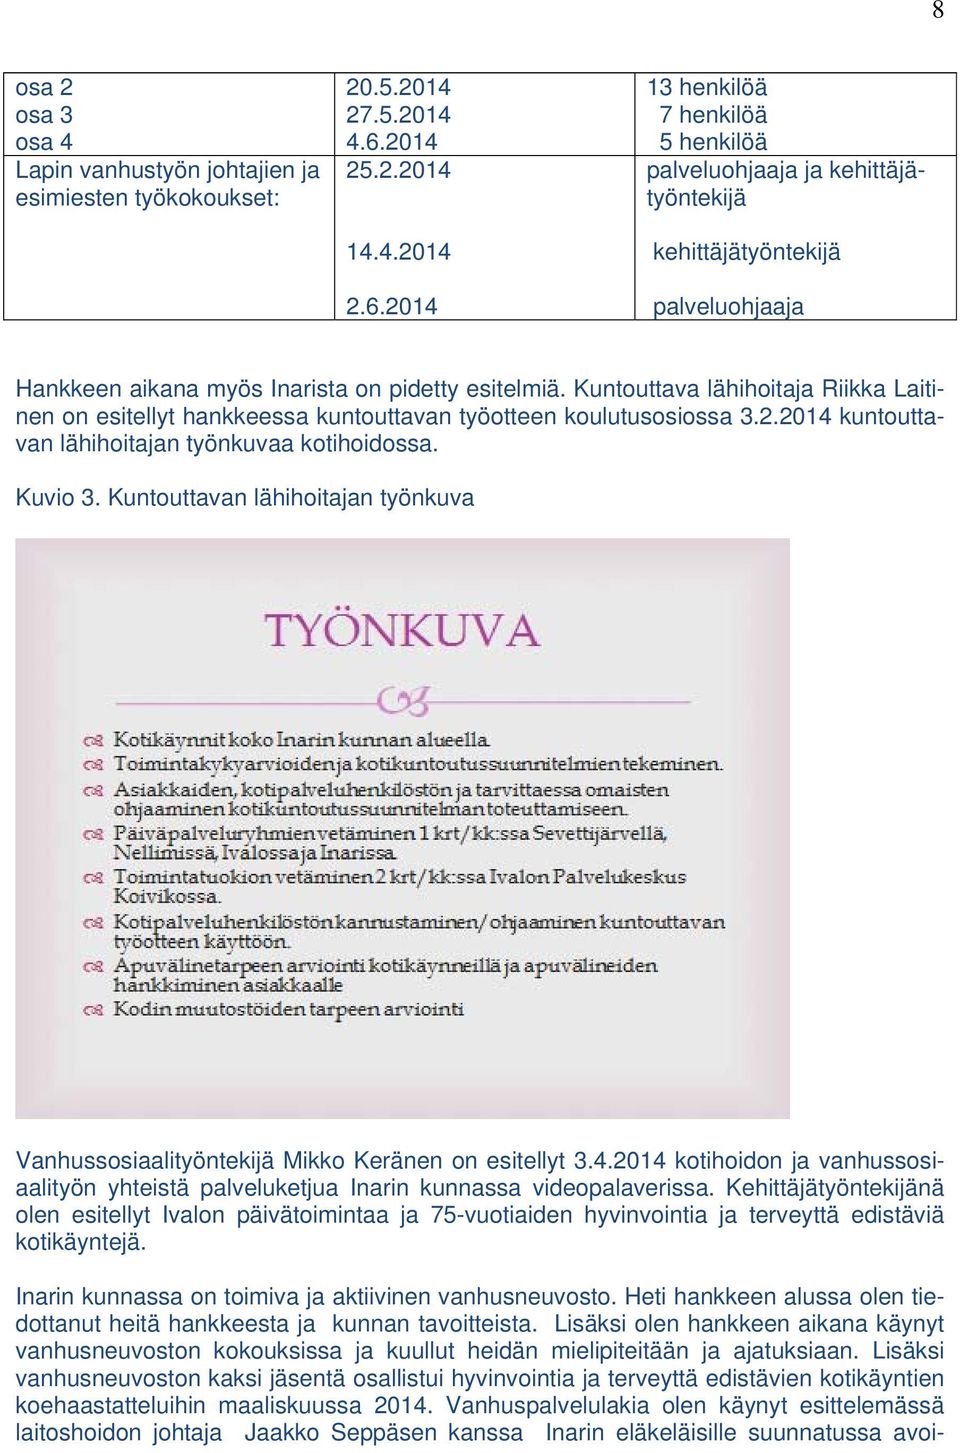 Kuntouttava lähihoitaja Riikka Laitinen on esitellyt hankkeessa kuntouttavan työotteen koulutusosiossa 3.2.2014 kuntouttavan lähihoitajan työnkuvaa kotihoidossa. Kuvio 3.